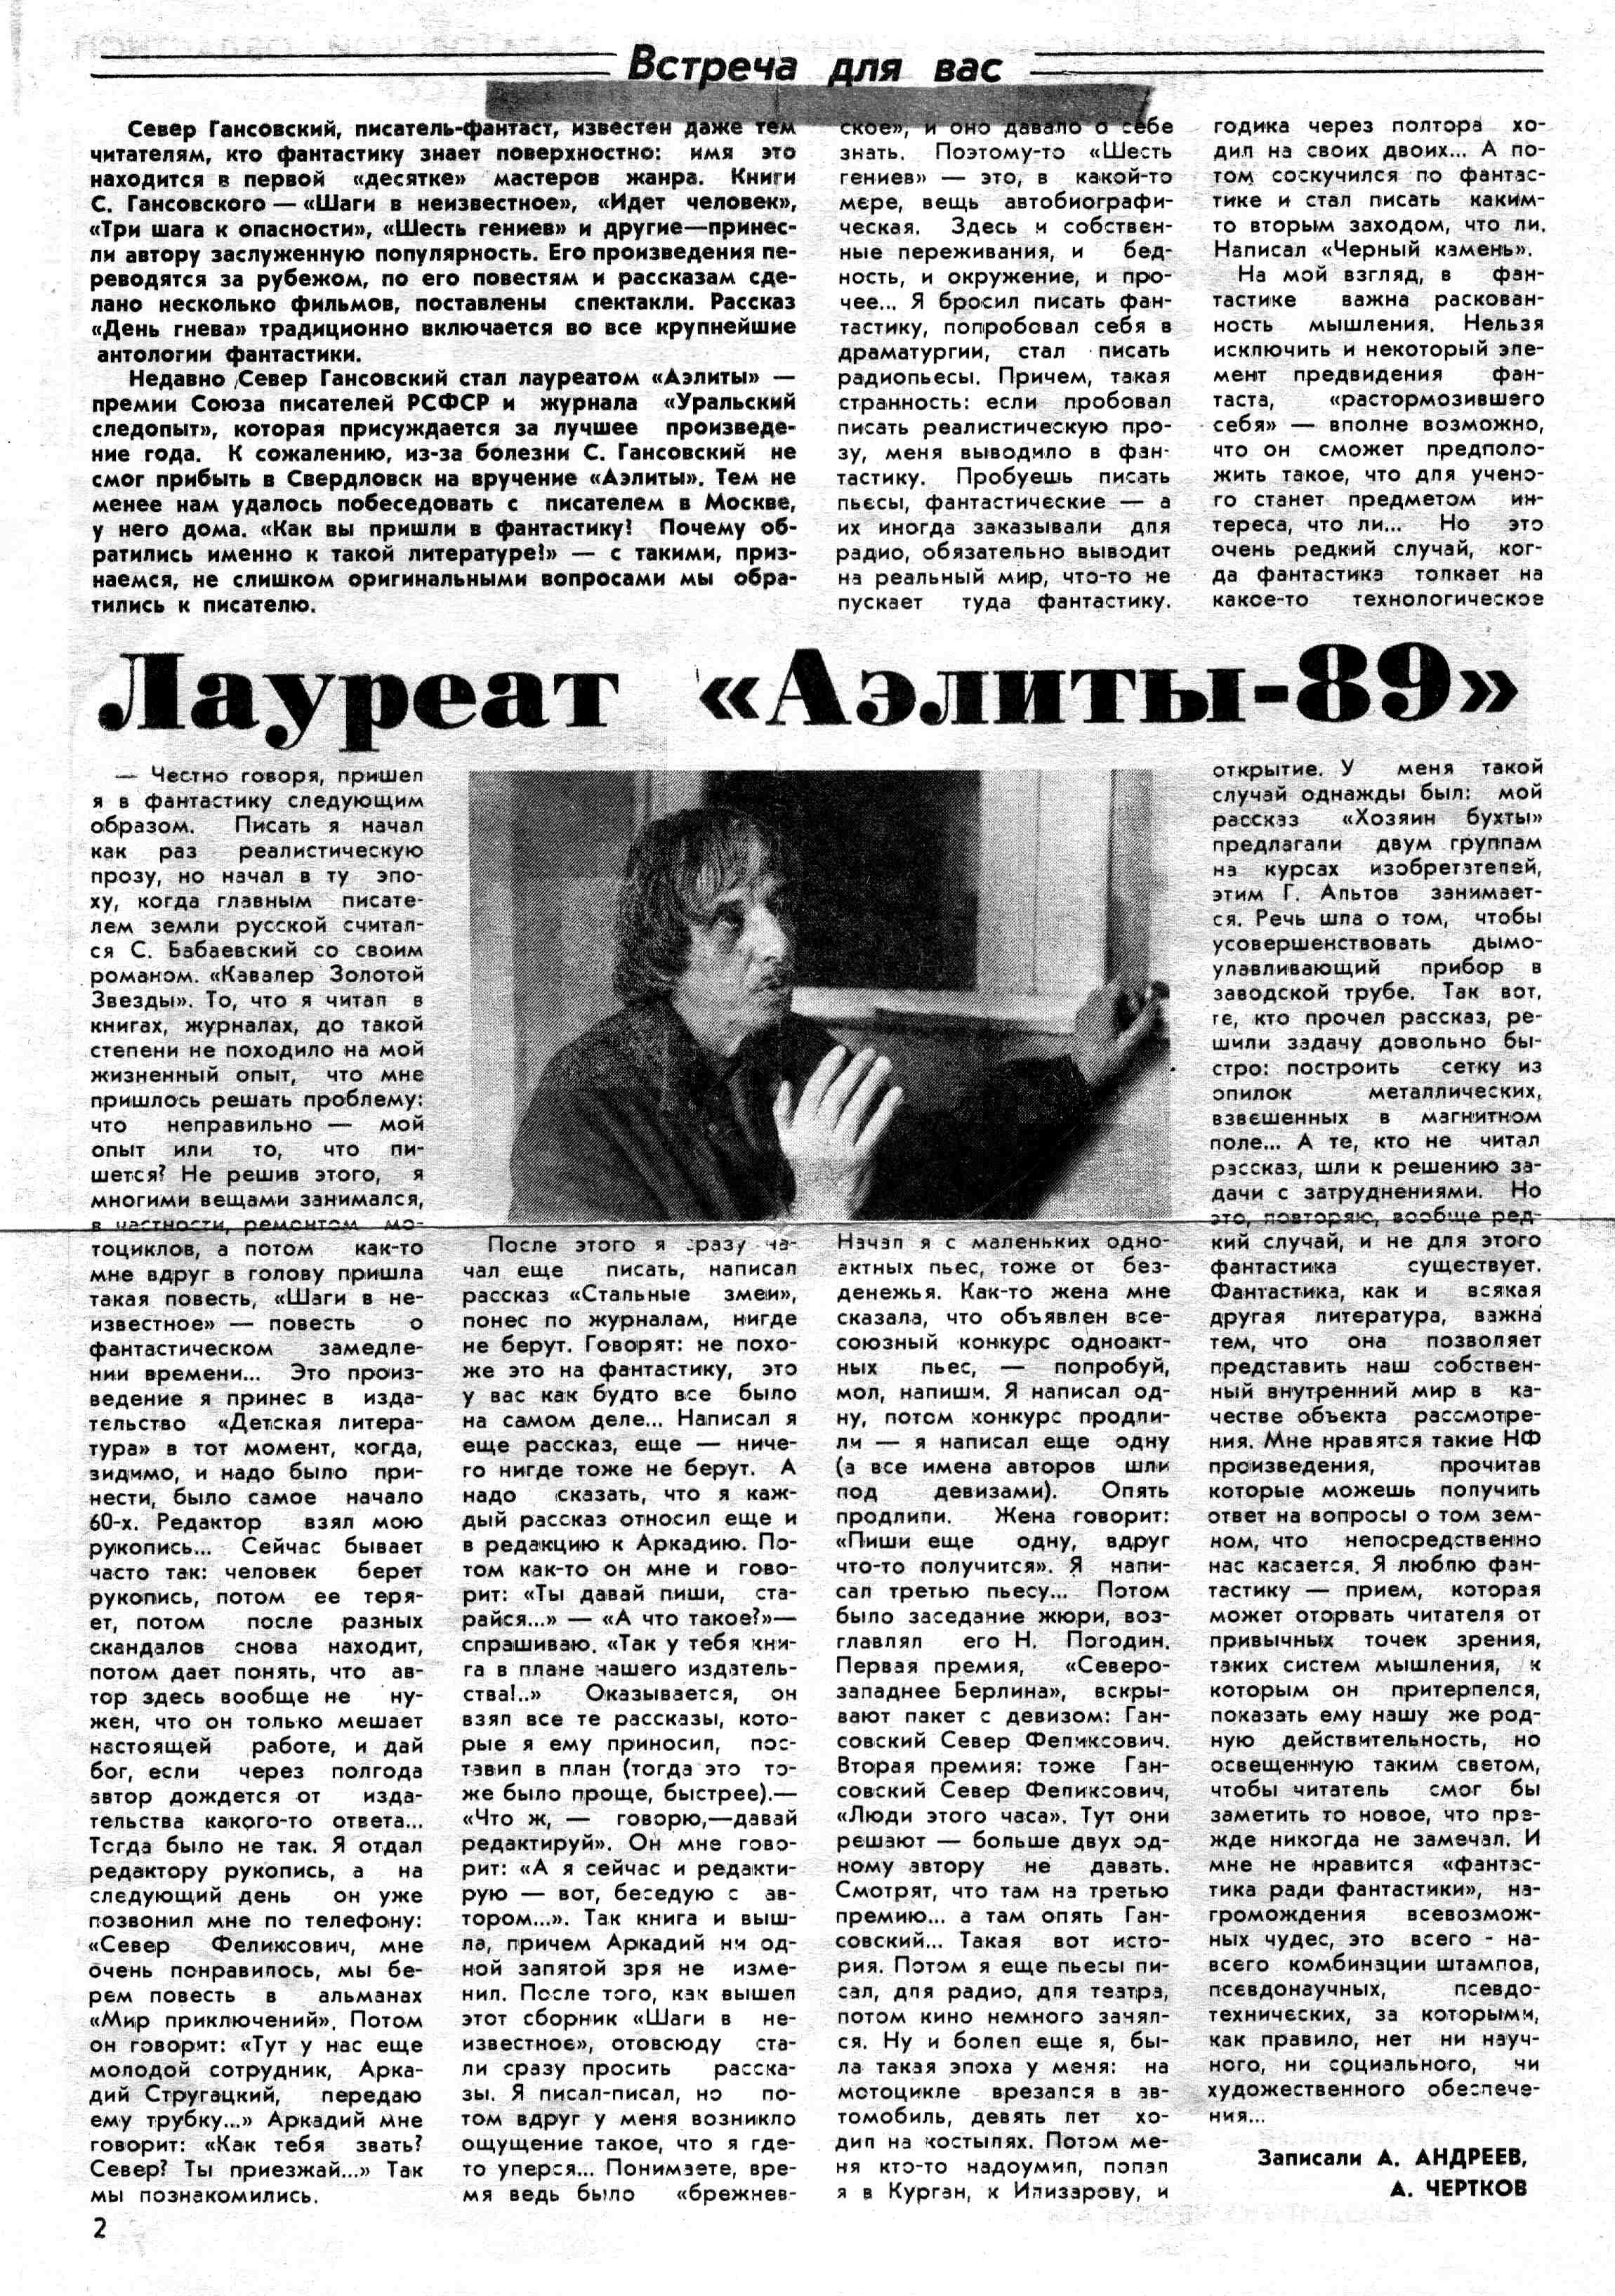 Интервью Севера Гансовского. 1989 год